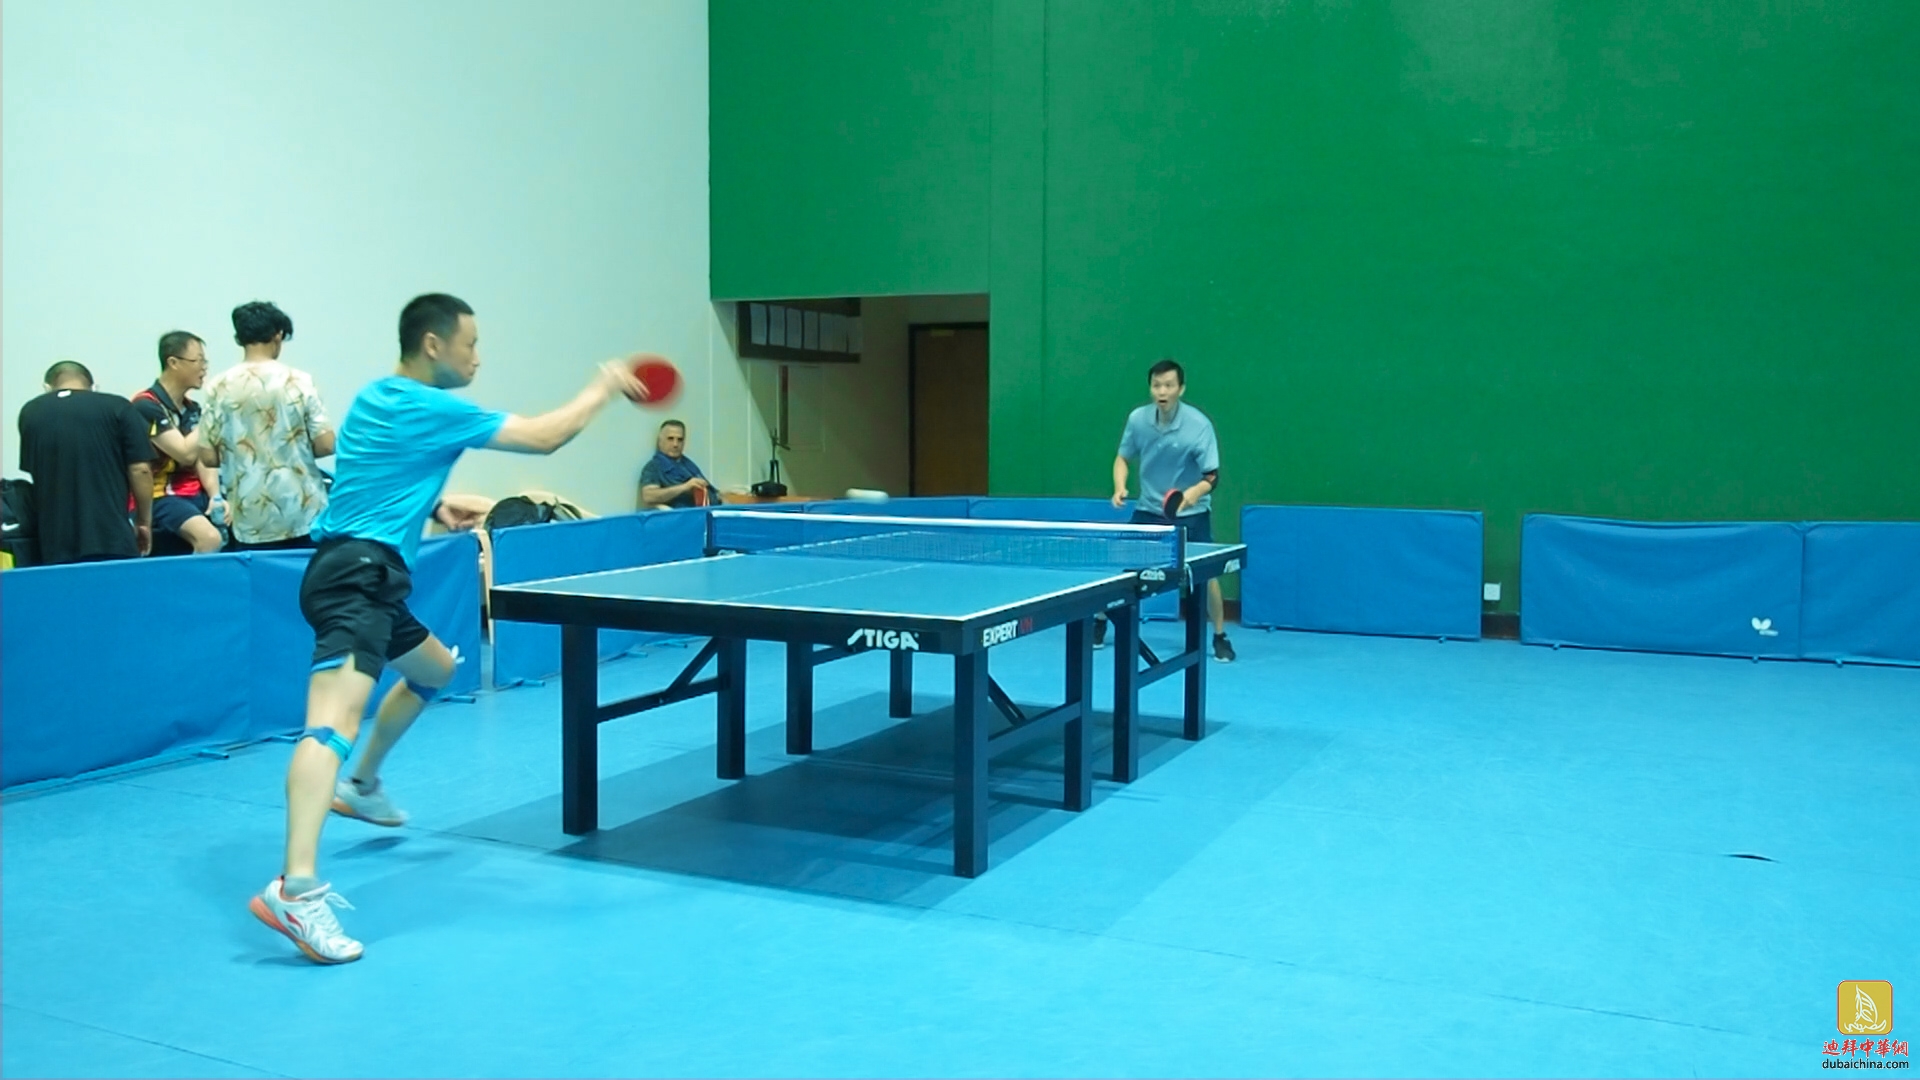 【中看迪拜】迪拜Wasl乒乓俱乐部实战，直拍横打是主要得分手段（下）